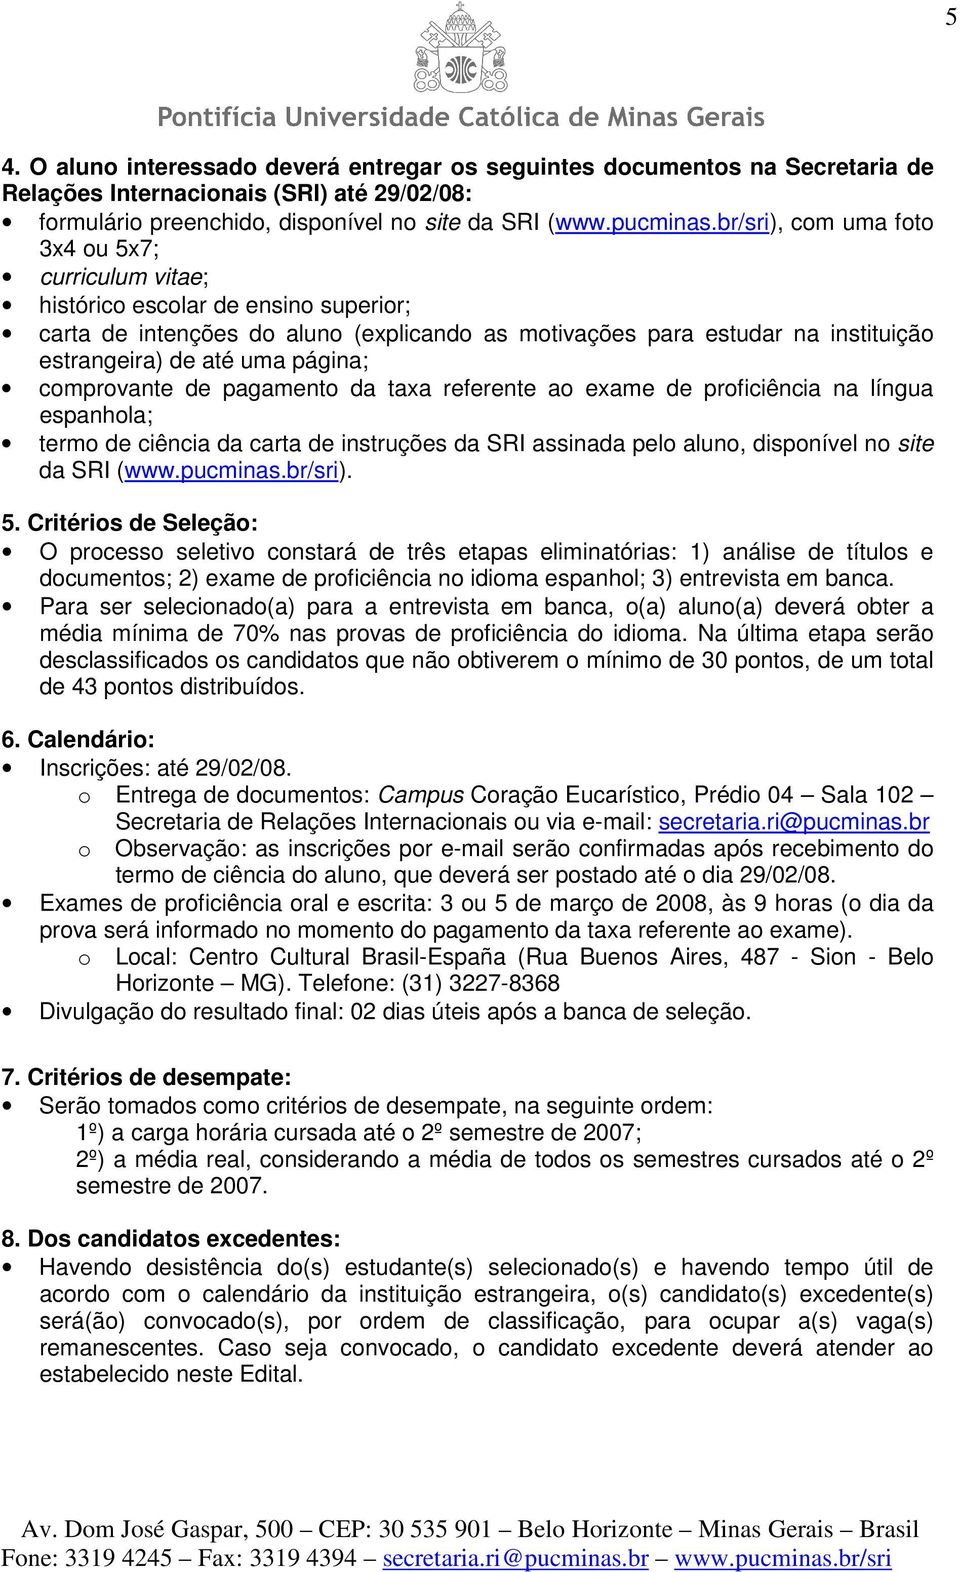 página; comprovante de pagamento da taxa referente ao exame de proficiência na língua espanhola; termo de ciência da carta de instruções da SRI assinada pelo aluno, disponível no site da SRI (www.